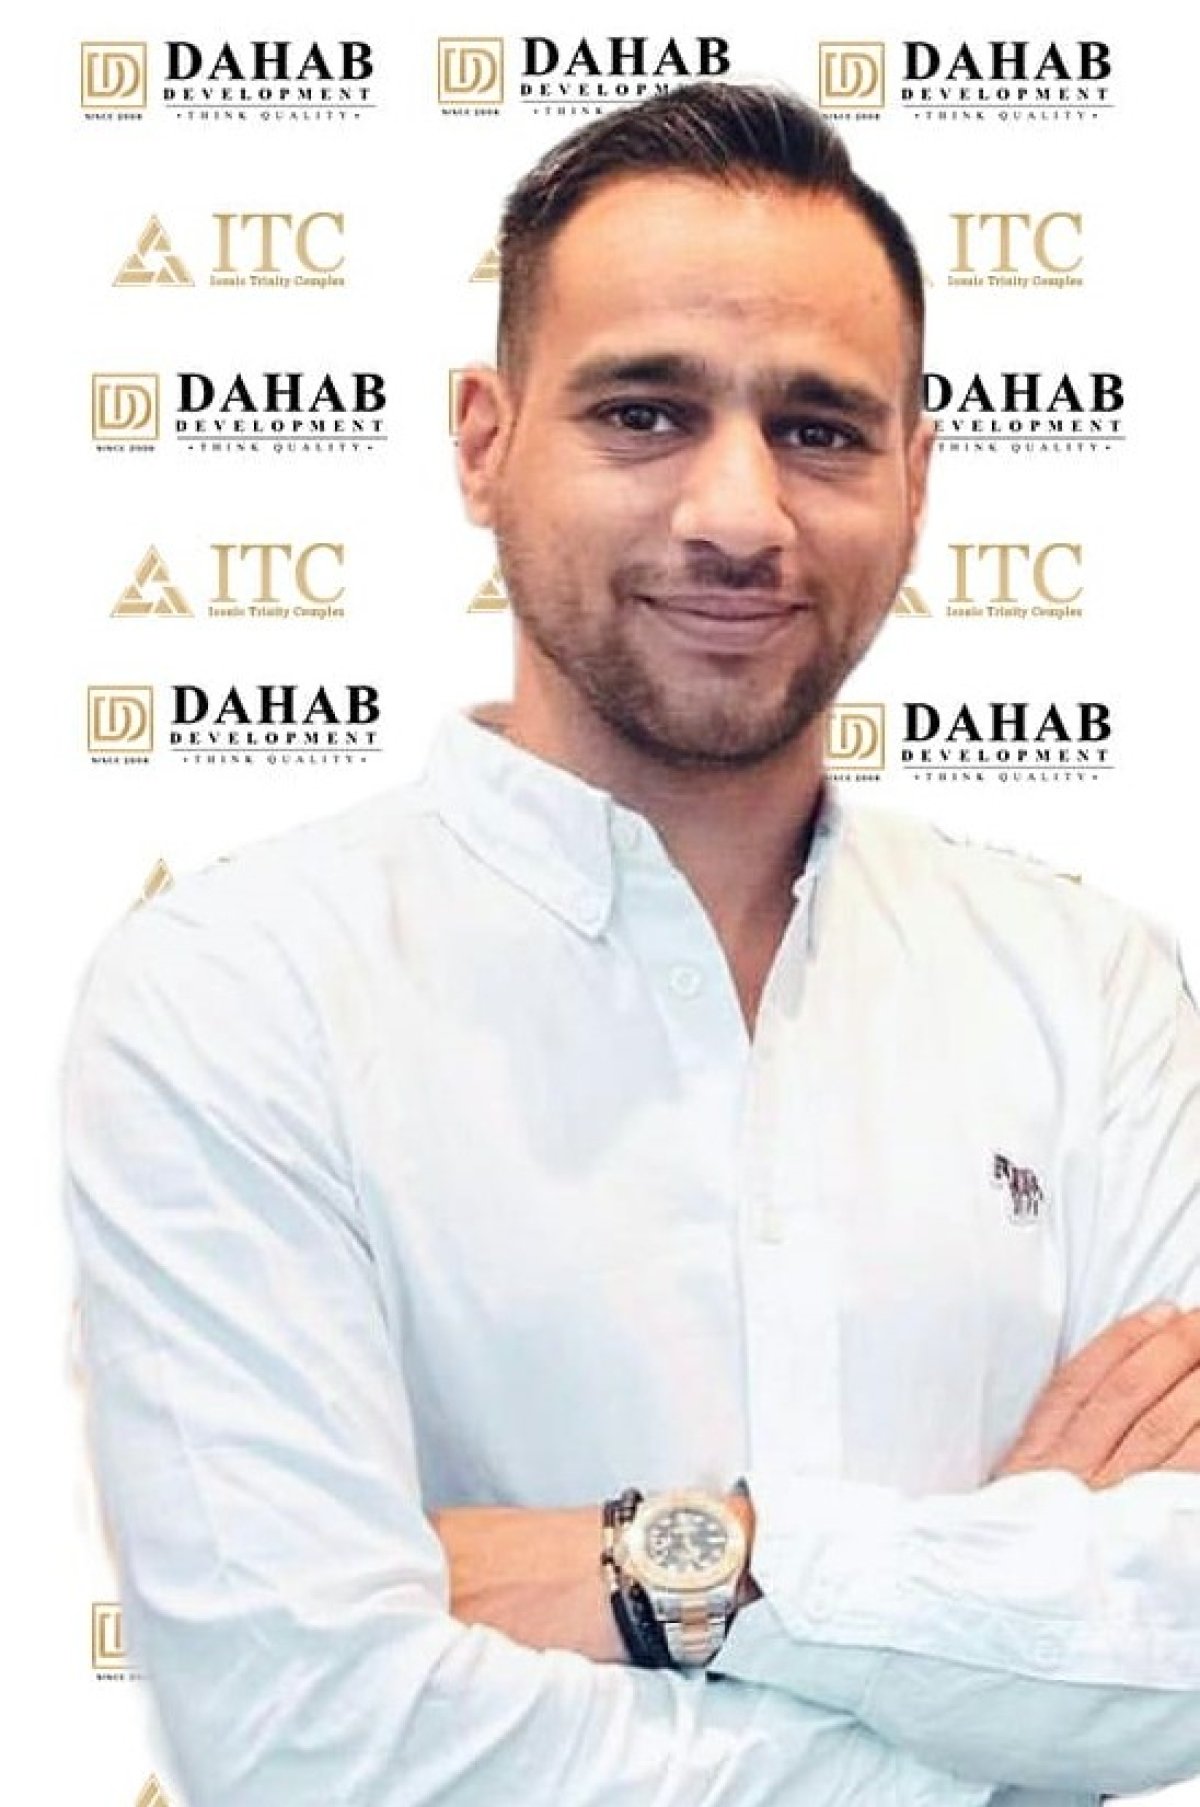 شركة Dahab development تعلن فتح باب الحجز بمشروع " ITC " أحدث مشروعاتها بالعاصمة الإدارية